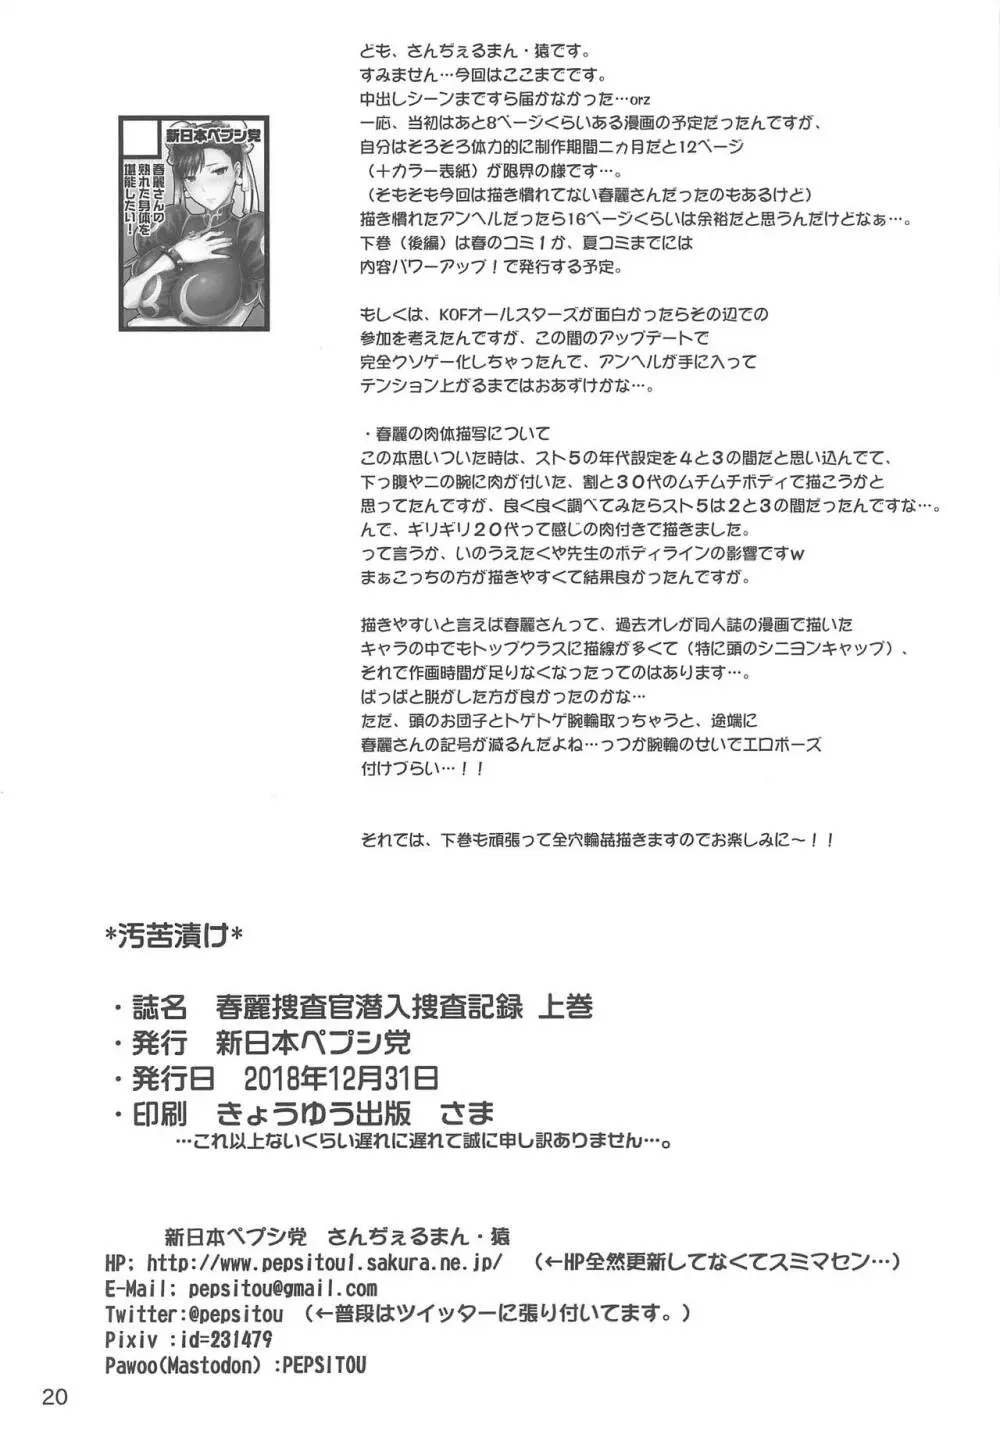 春麗捜査官潜入捜査記録 上巻 21ページ